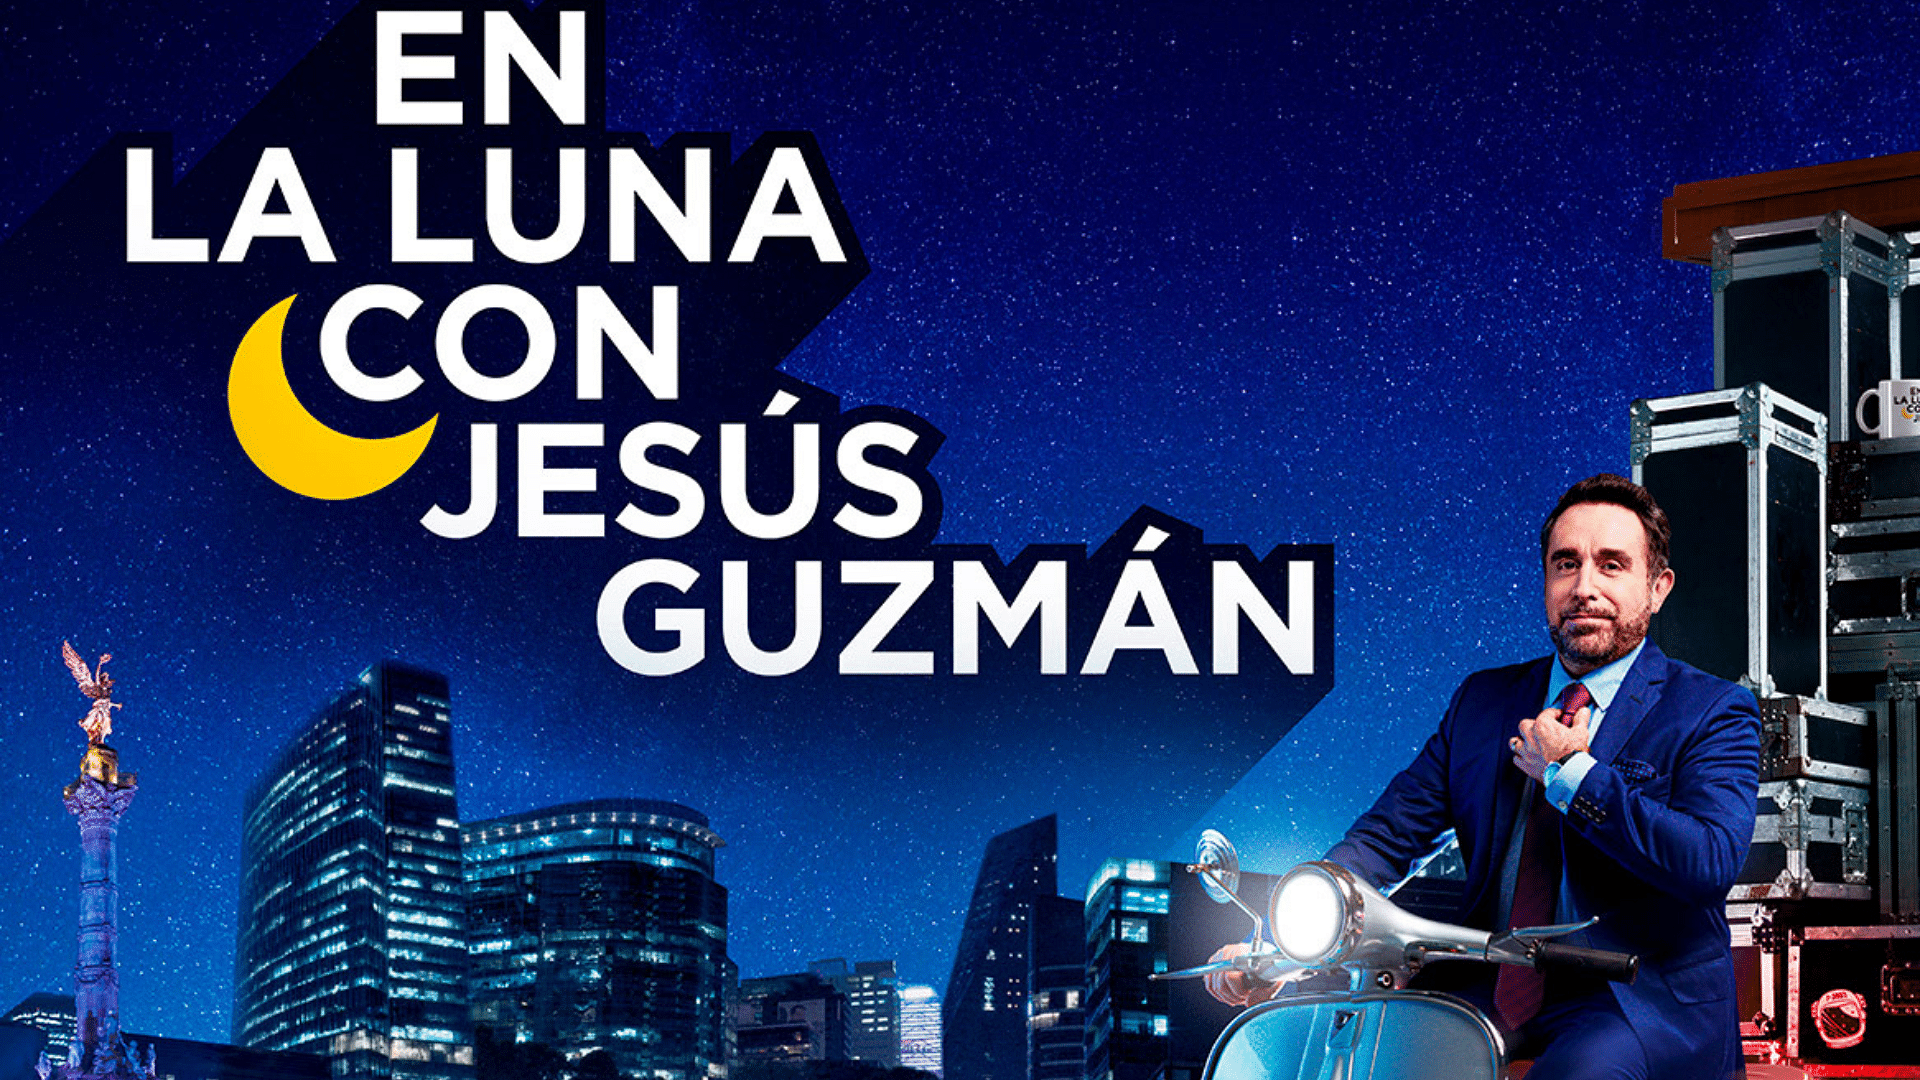 En la luna con Jesús Guzmán